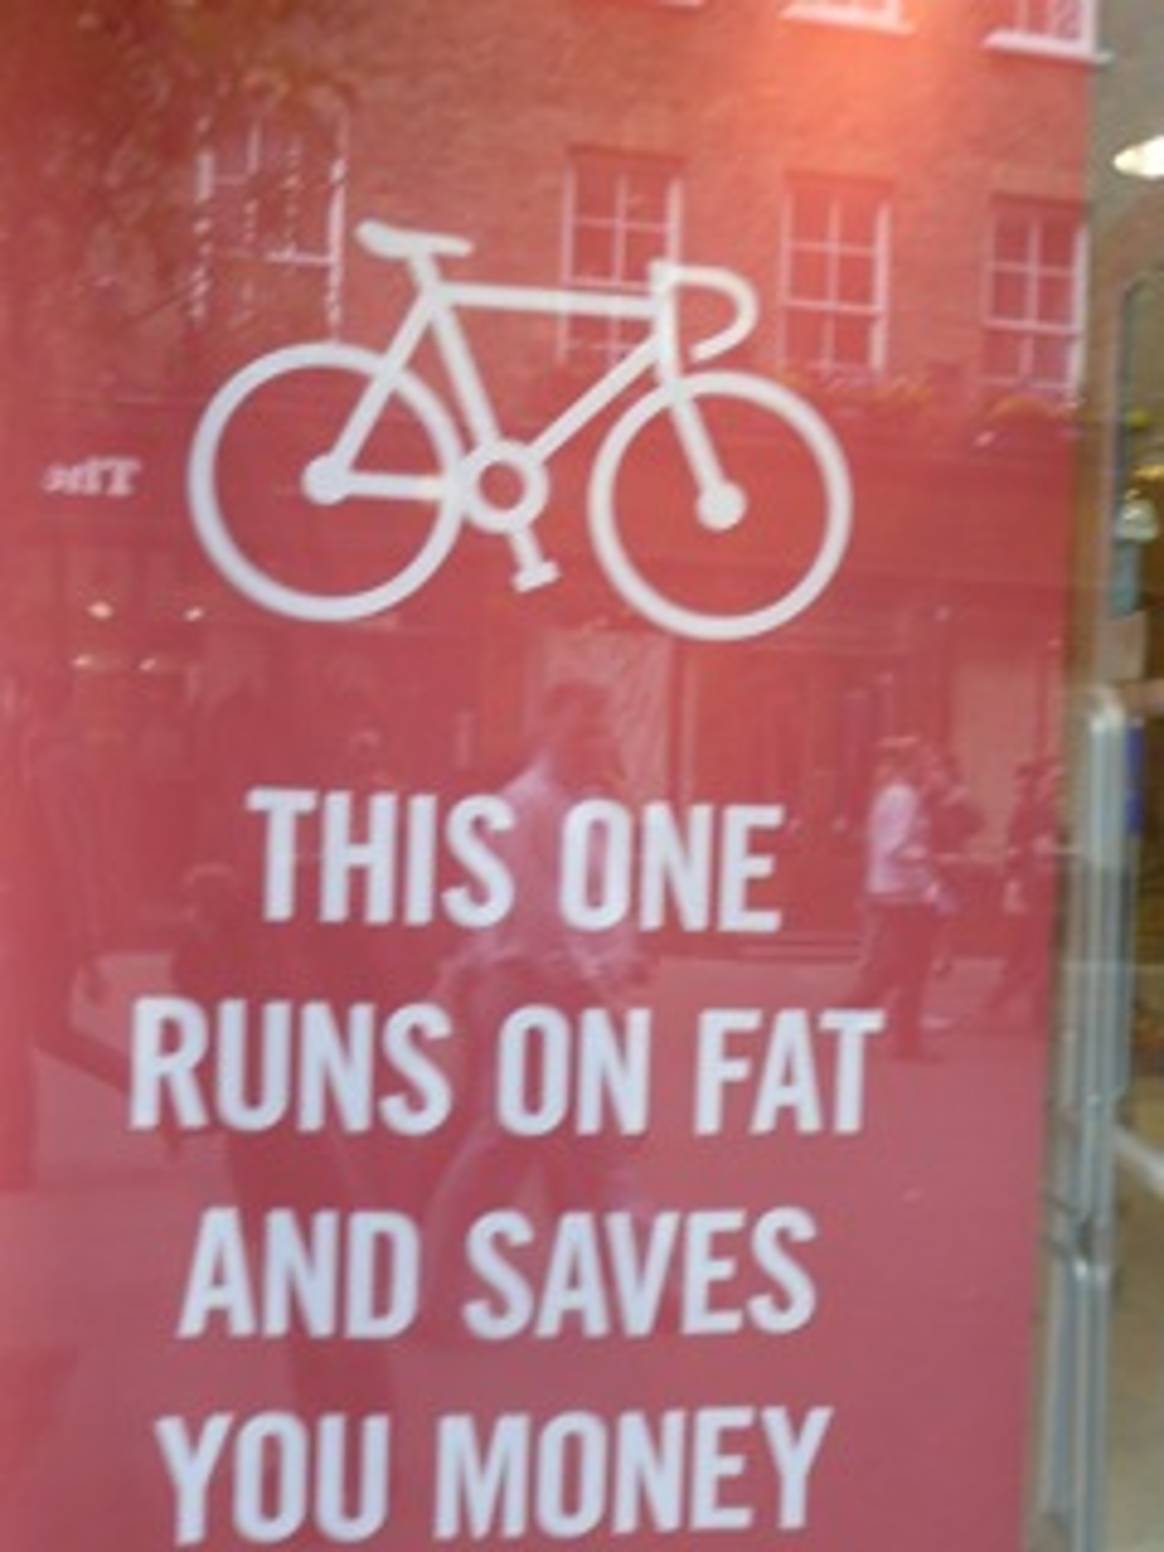 Queen of Retail: Ga toch 'n end Fietsen op je BAH(k)fiets...